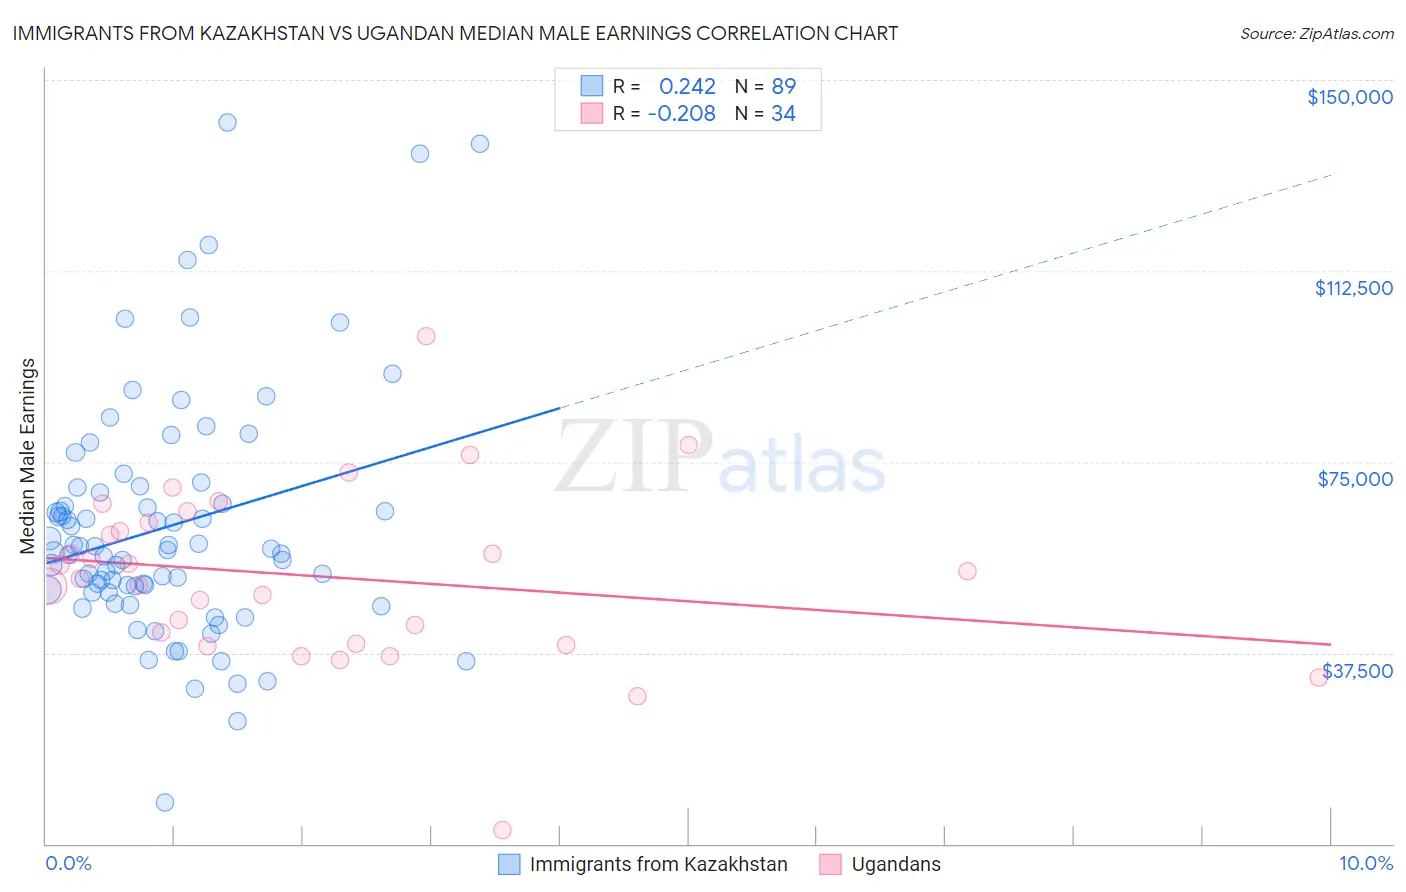 Immigrants from Kazakhstan vs Ugandan Median Male Earnings